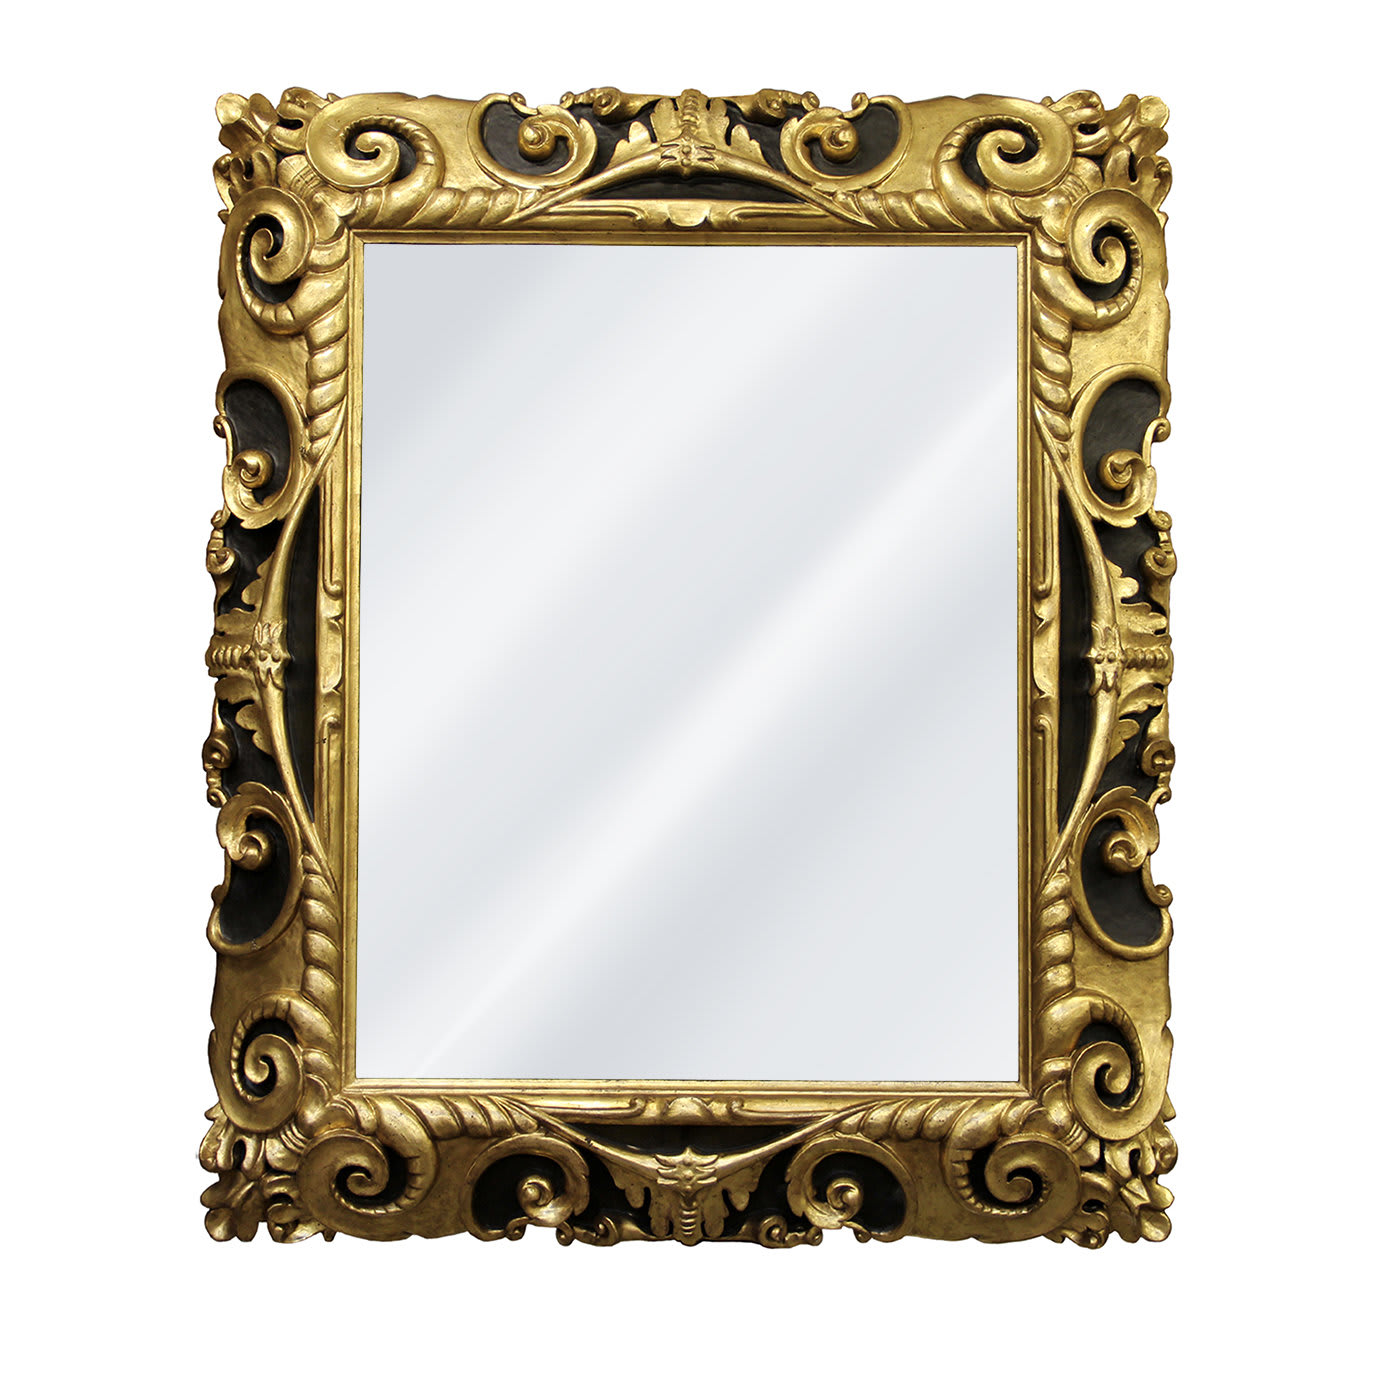 Fiorentina 1600 Black and Gold Framed Wall Mirror - Leone Cornici